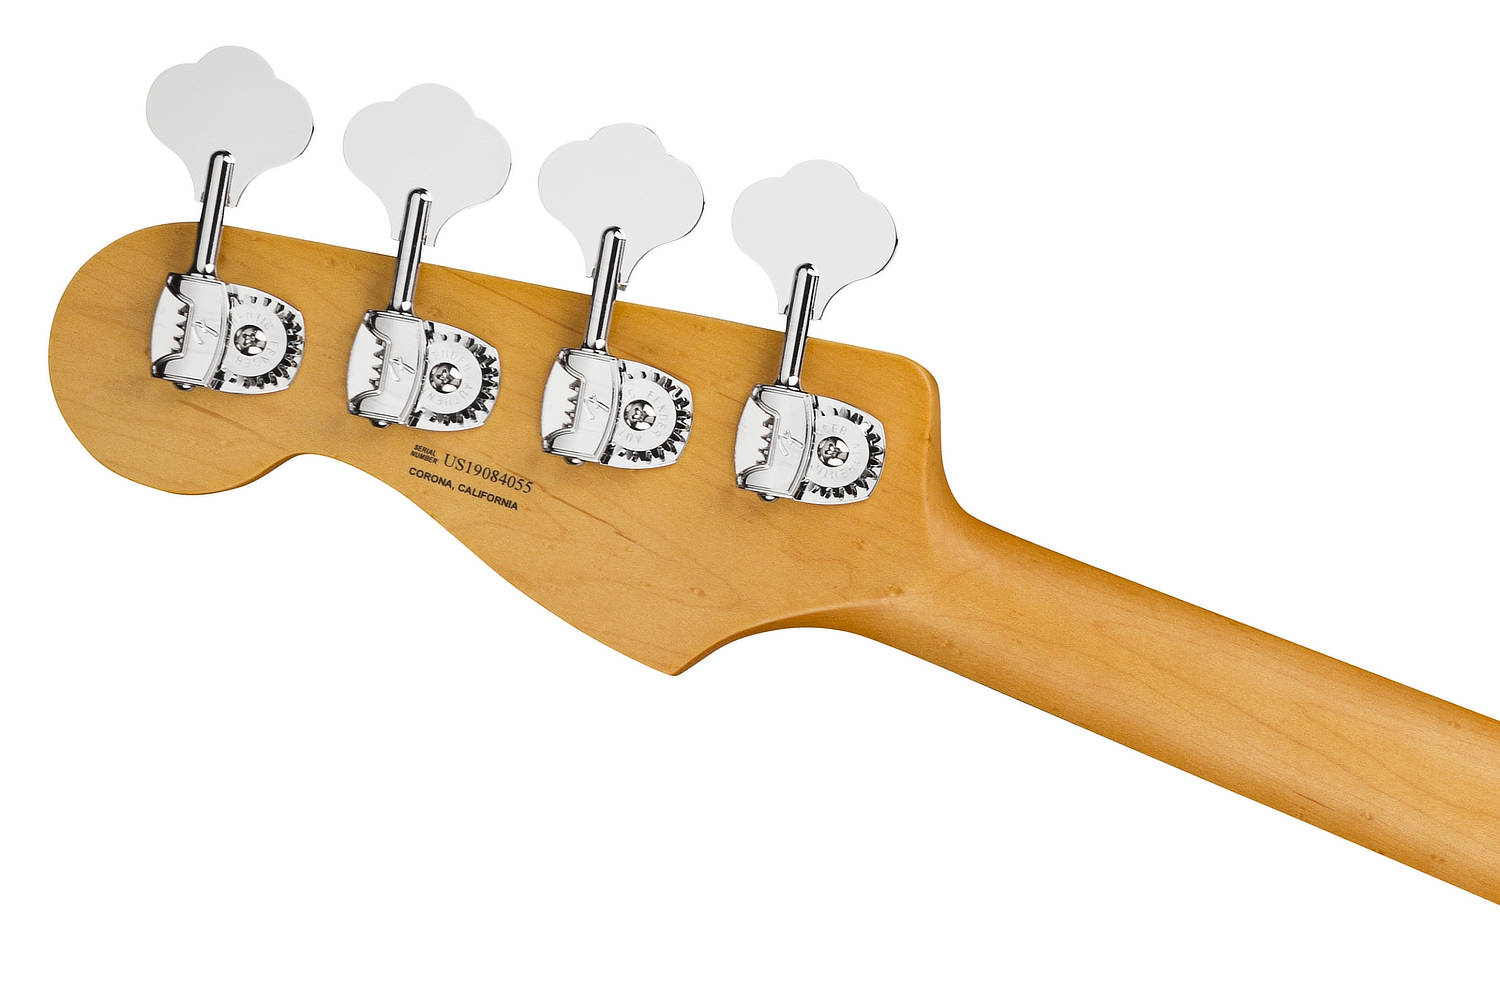 Fender American Ultra Jazz Bass Guitar